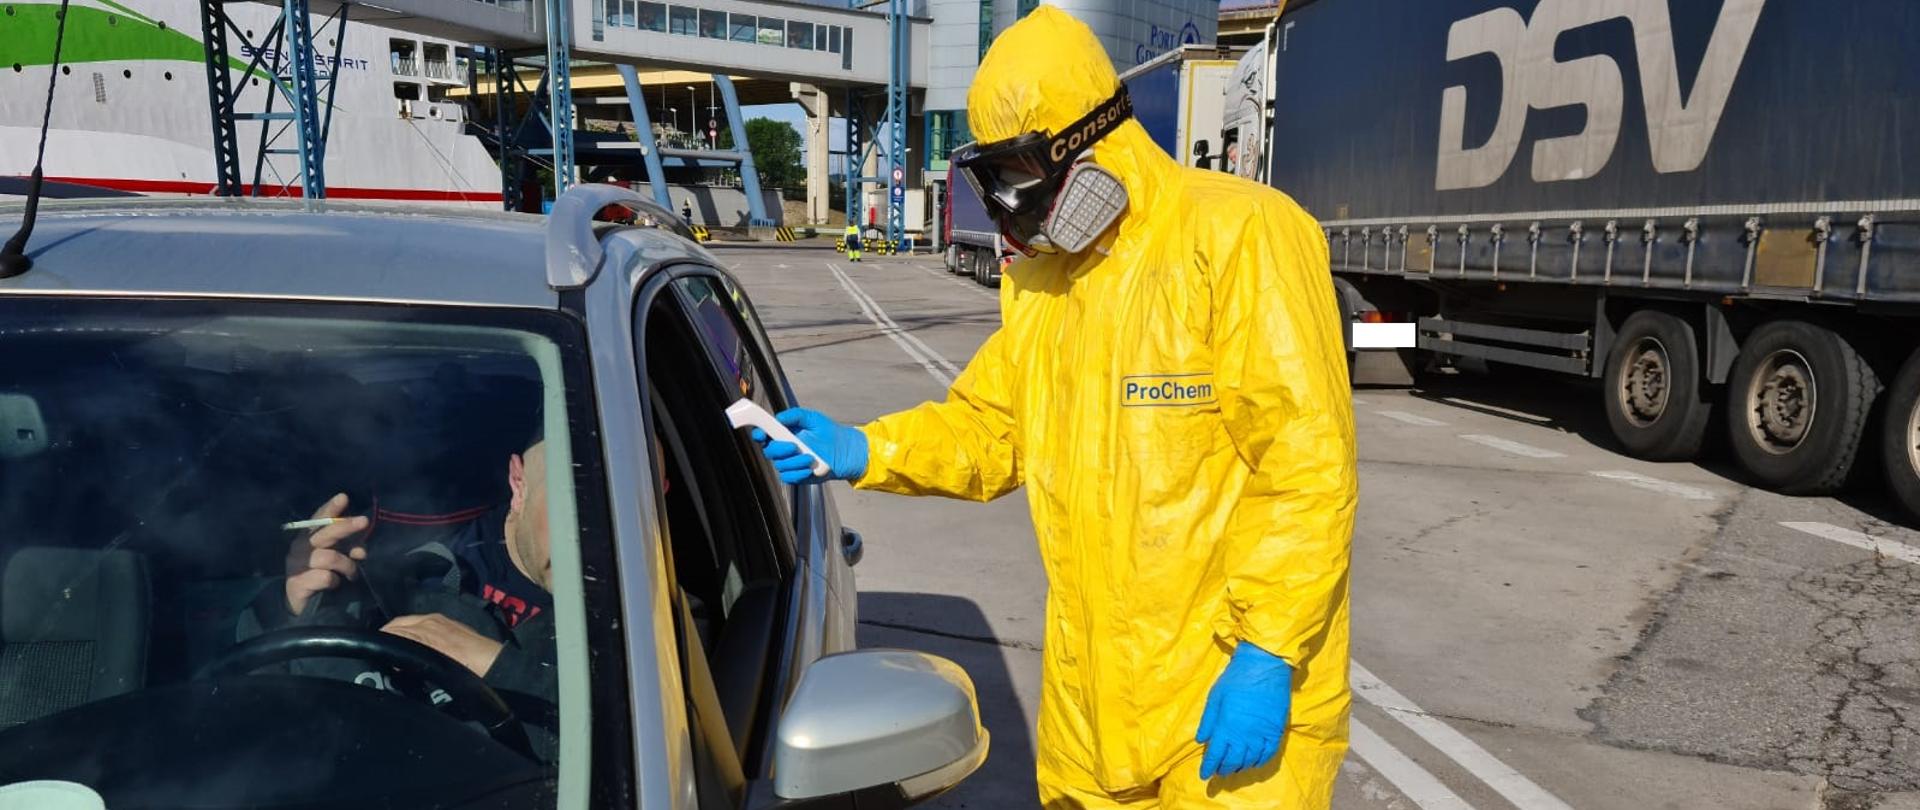 KM PSP Gdynia – podsumowanie działań z koronawirusem – na zdjęciu strażak w żółtym szczelnym kombinezonie sprawdza temperaturę kierowcy samochodu. W tle terminal portu.